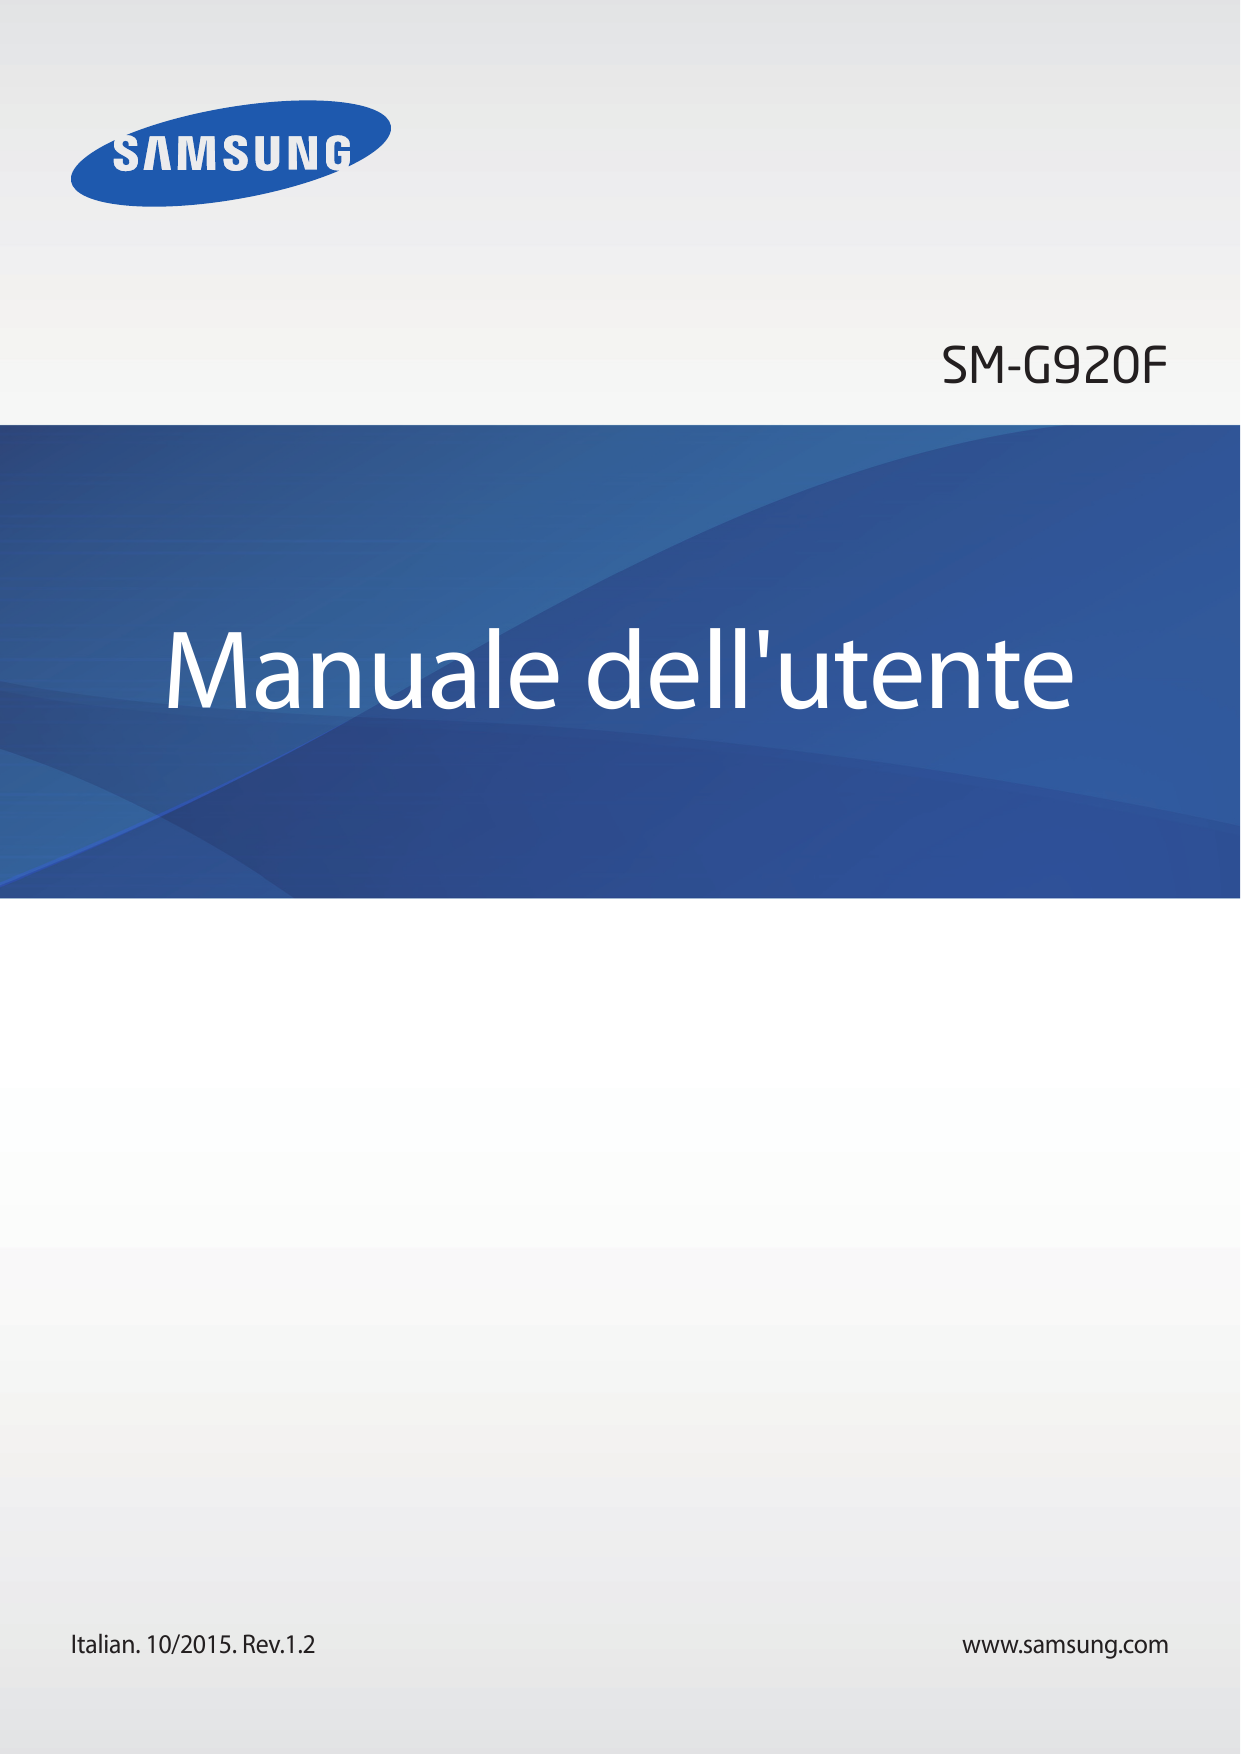 SM-G920FManuale dell'utenteItalian. 10/2015. Rev.1.2www.samsung.com